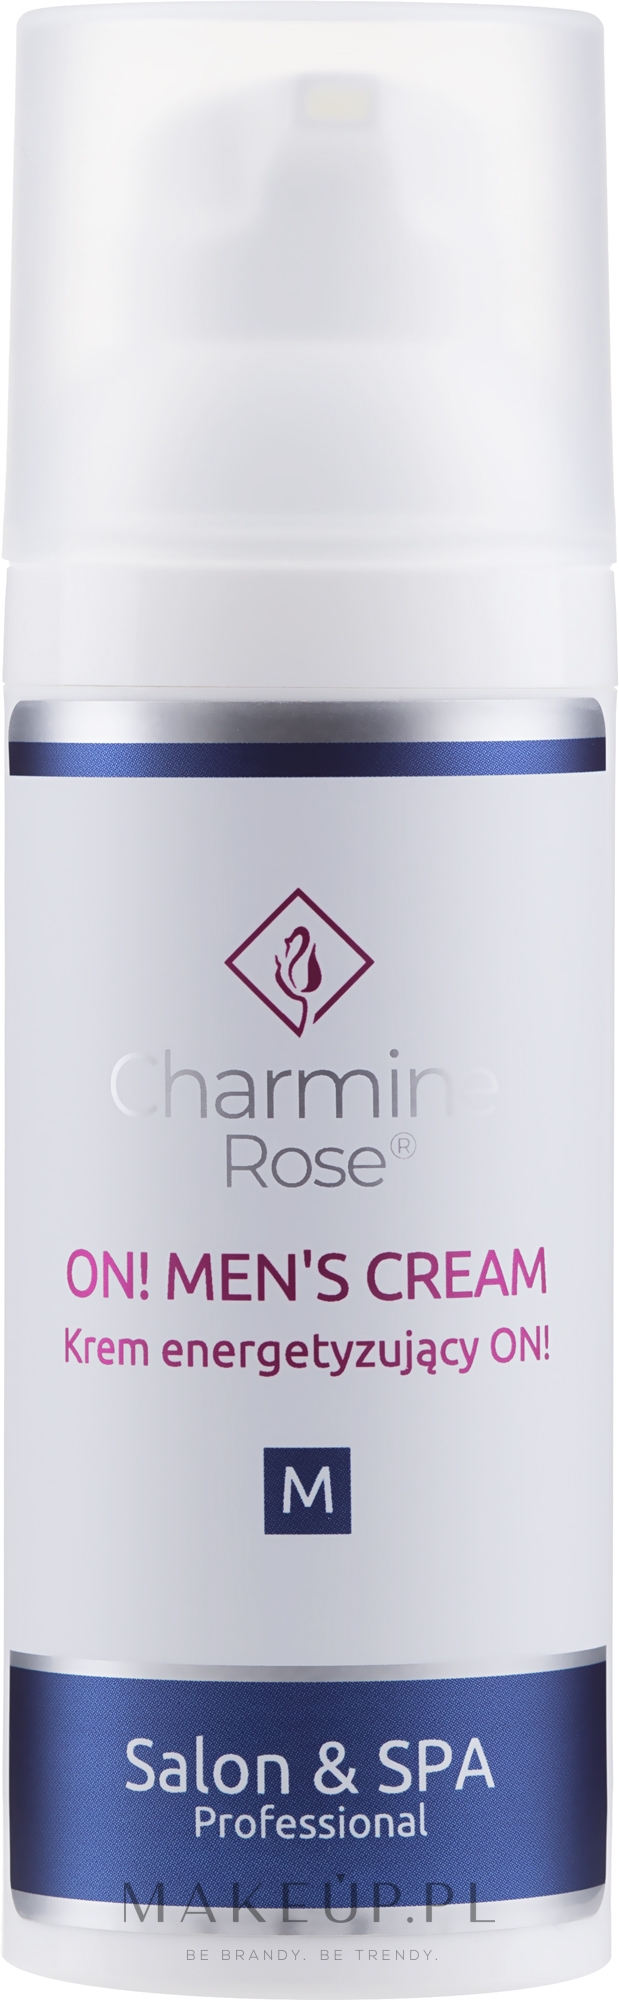 Energetyzujący krem do twarzy - Charmine Rose On! Men's Cream — Zdjęcie 50 ml